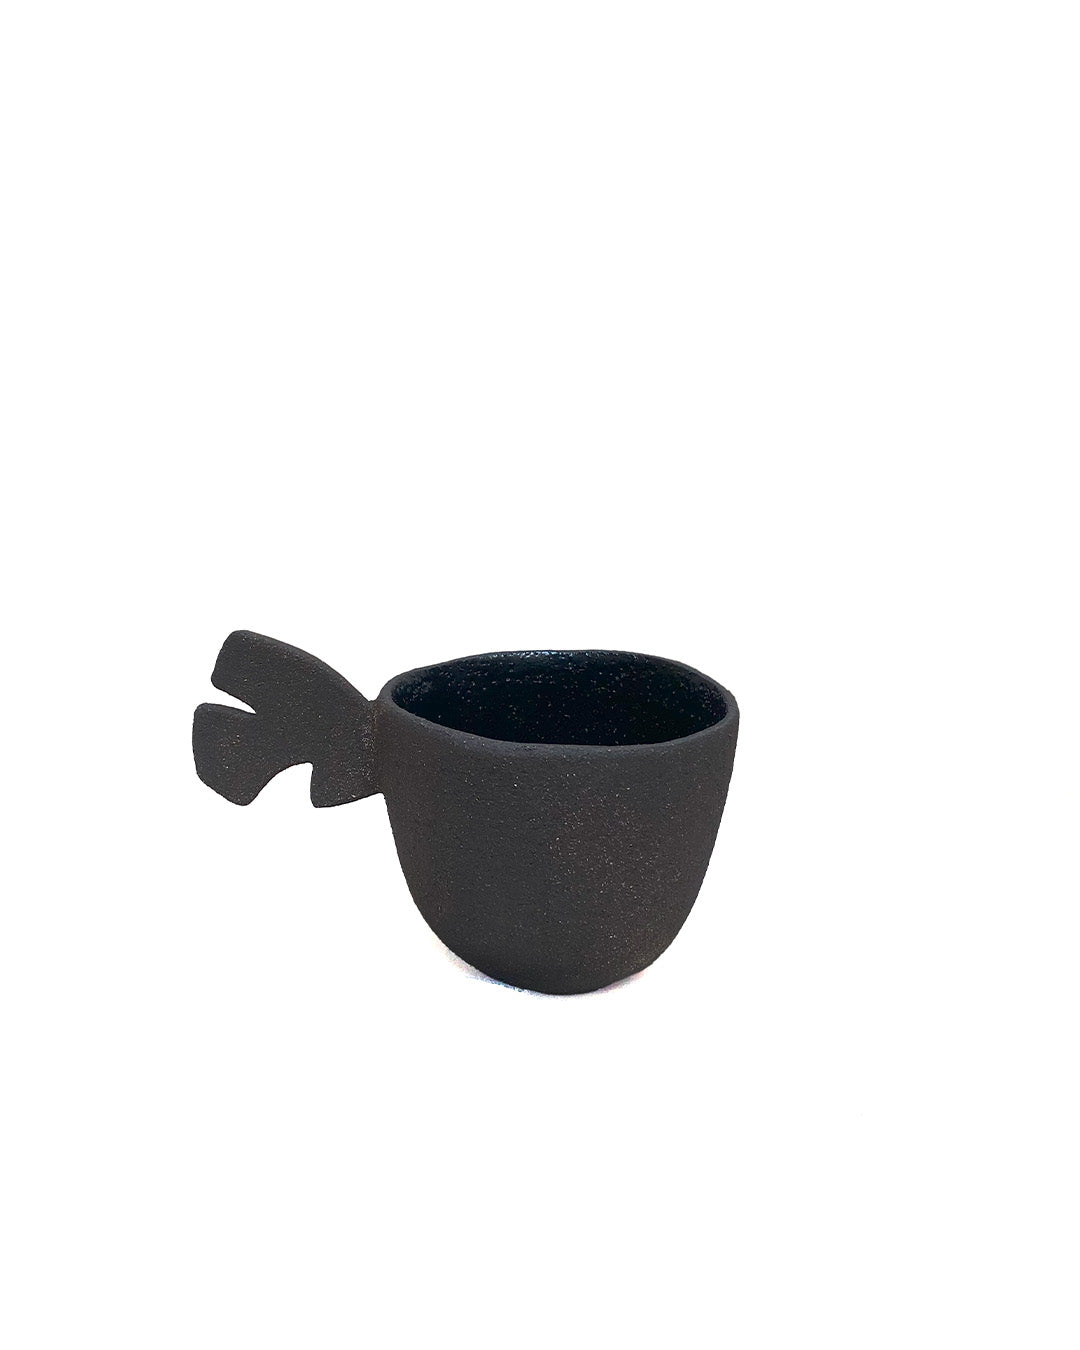 To-Hu Tea Mug